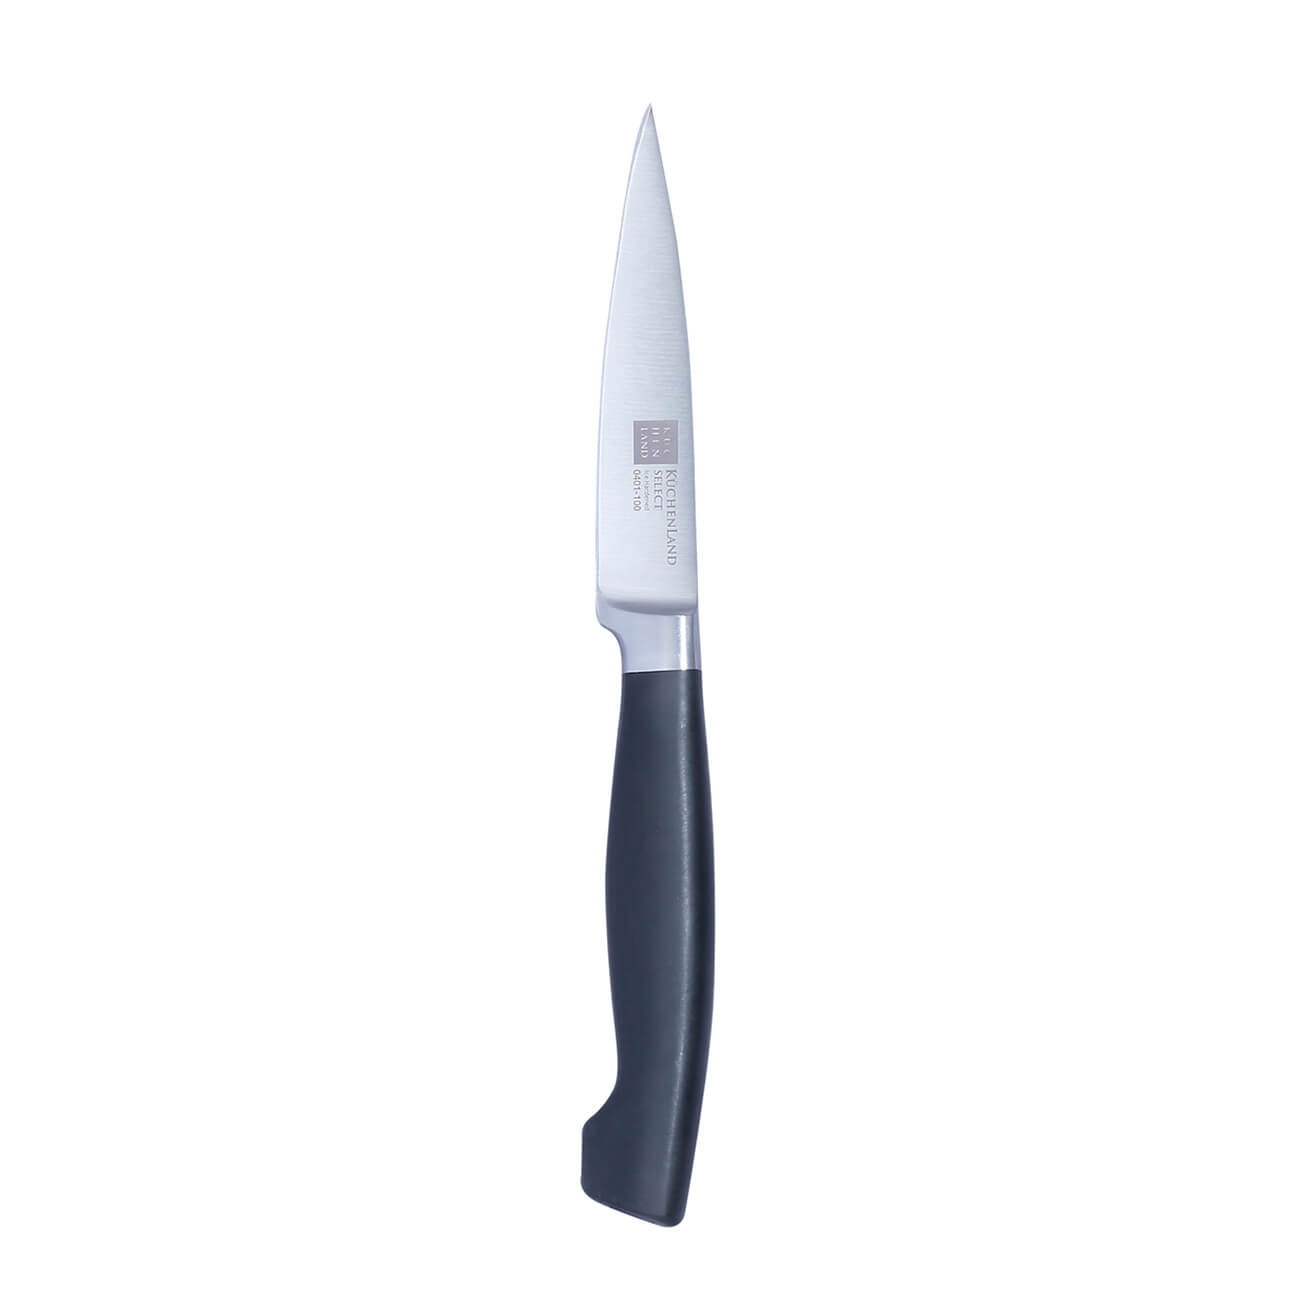 Kuchenland Нож для чистки овощей, 10 см, сталь/пластик, Select инструменты для моделирования и придания формы набор 4 шт пластик 16 см